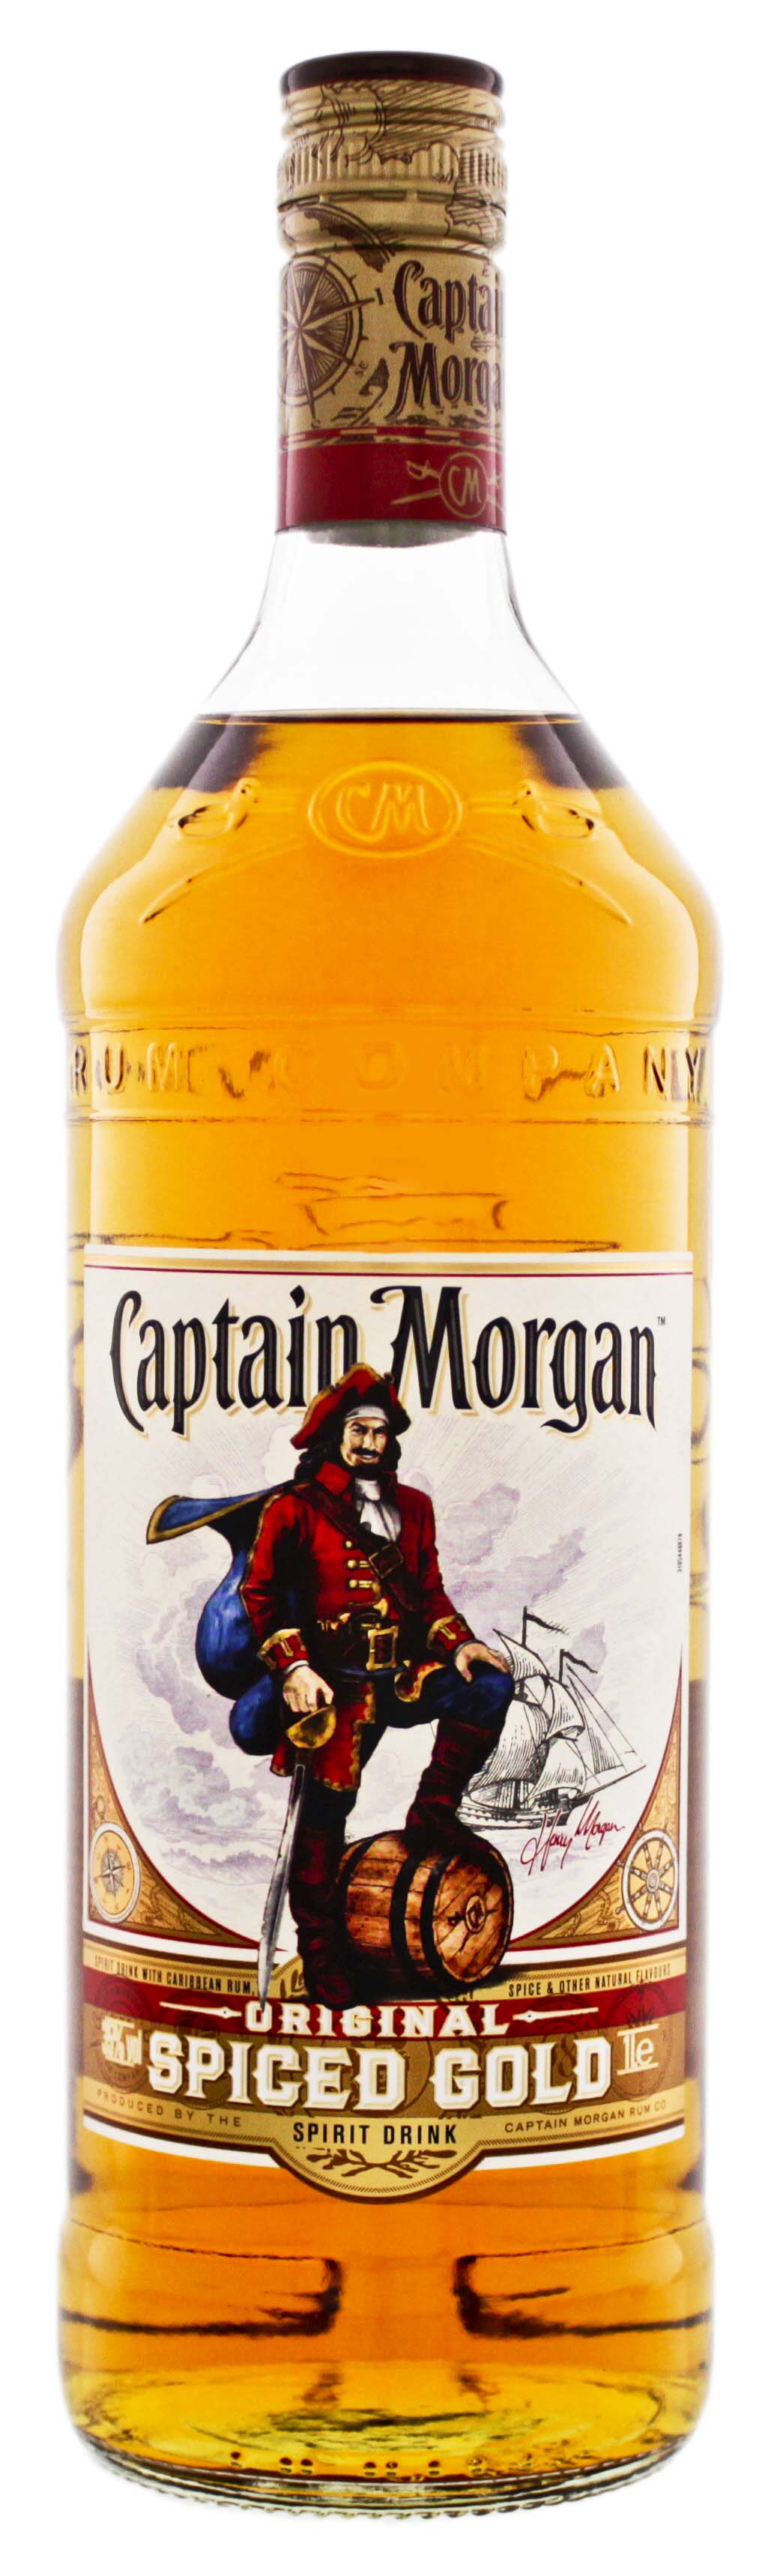 Captain Morgan Spiced Gold kaufen! Rum Online Shop & Spirituosen